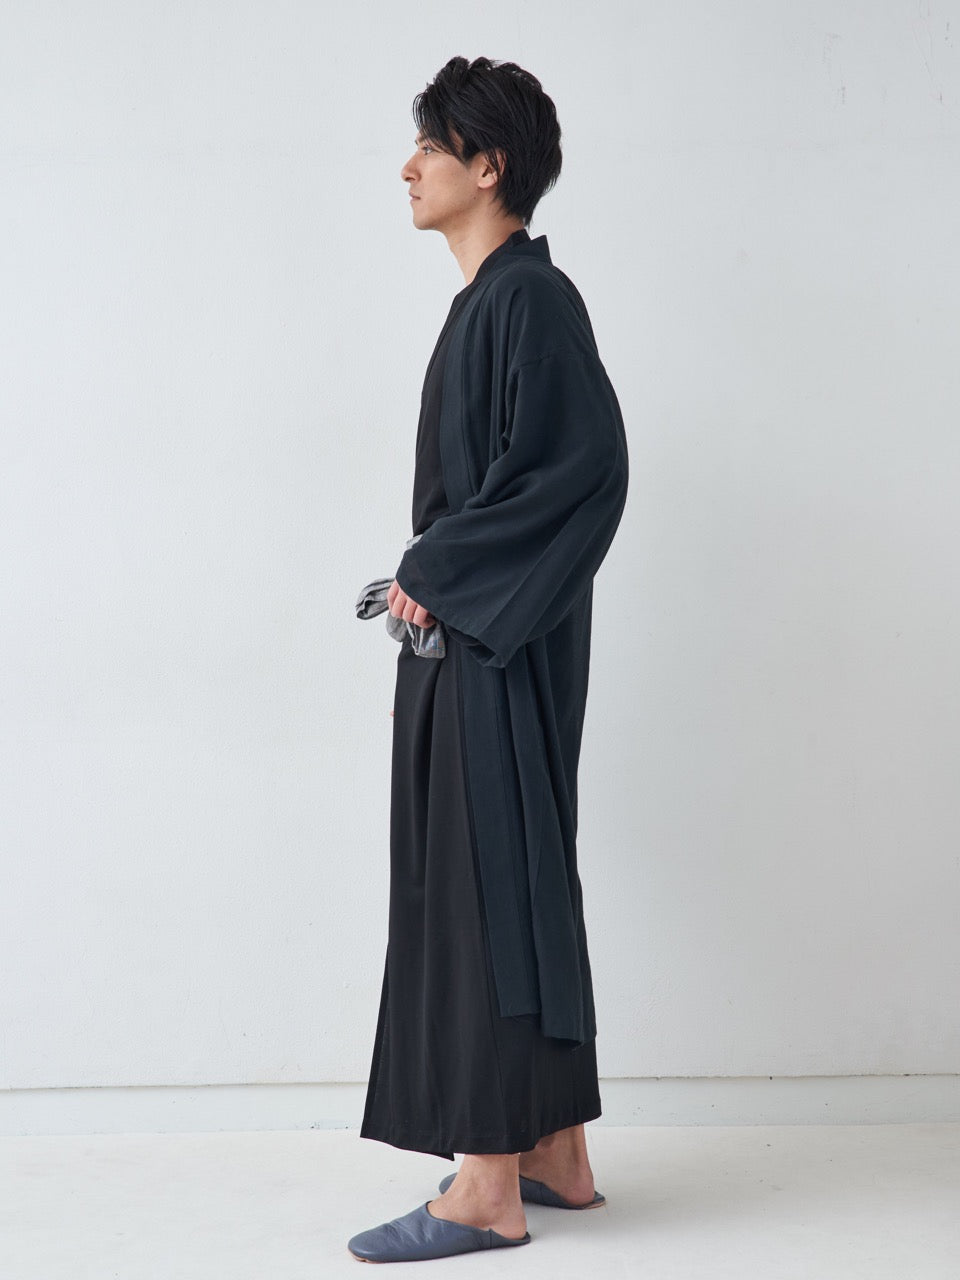 羽織ガウン・ロング(綿)-ブラック- HAORI Gown Long(Cotton)-Black- L